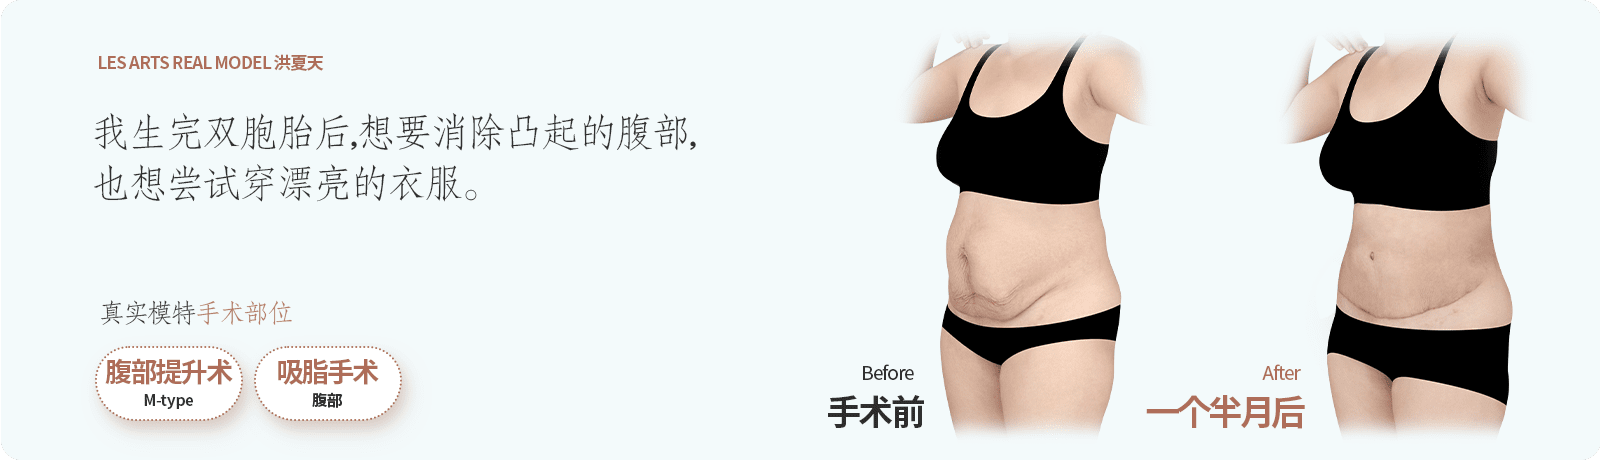 복부거상,지방흡입한 리얼모델